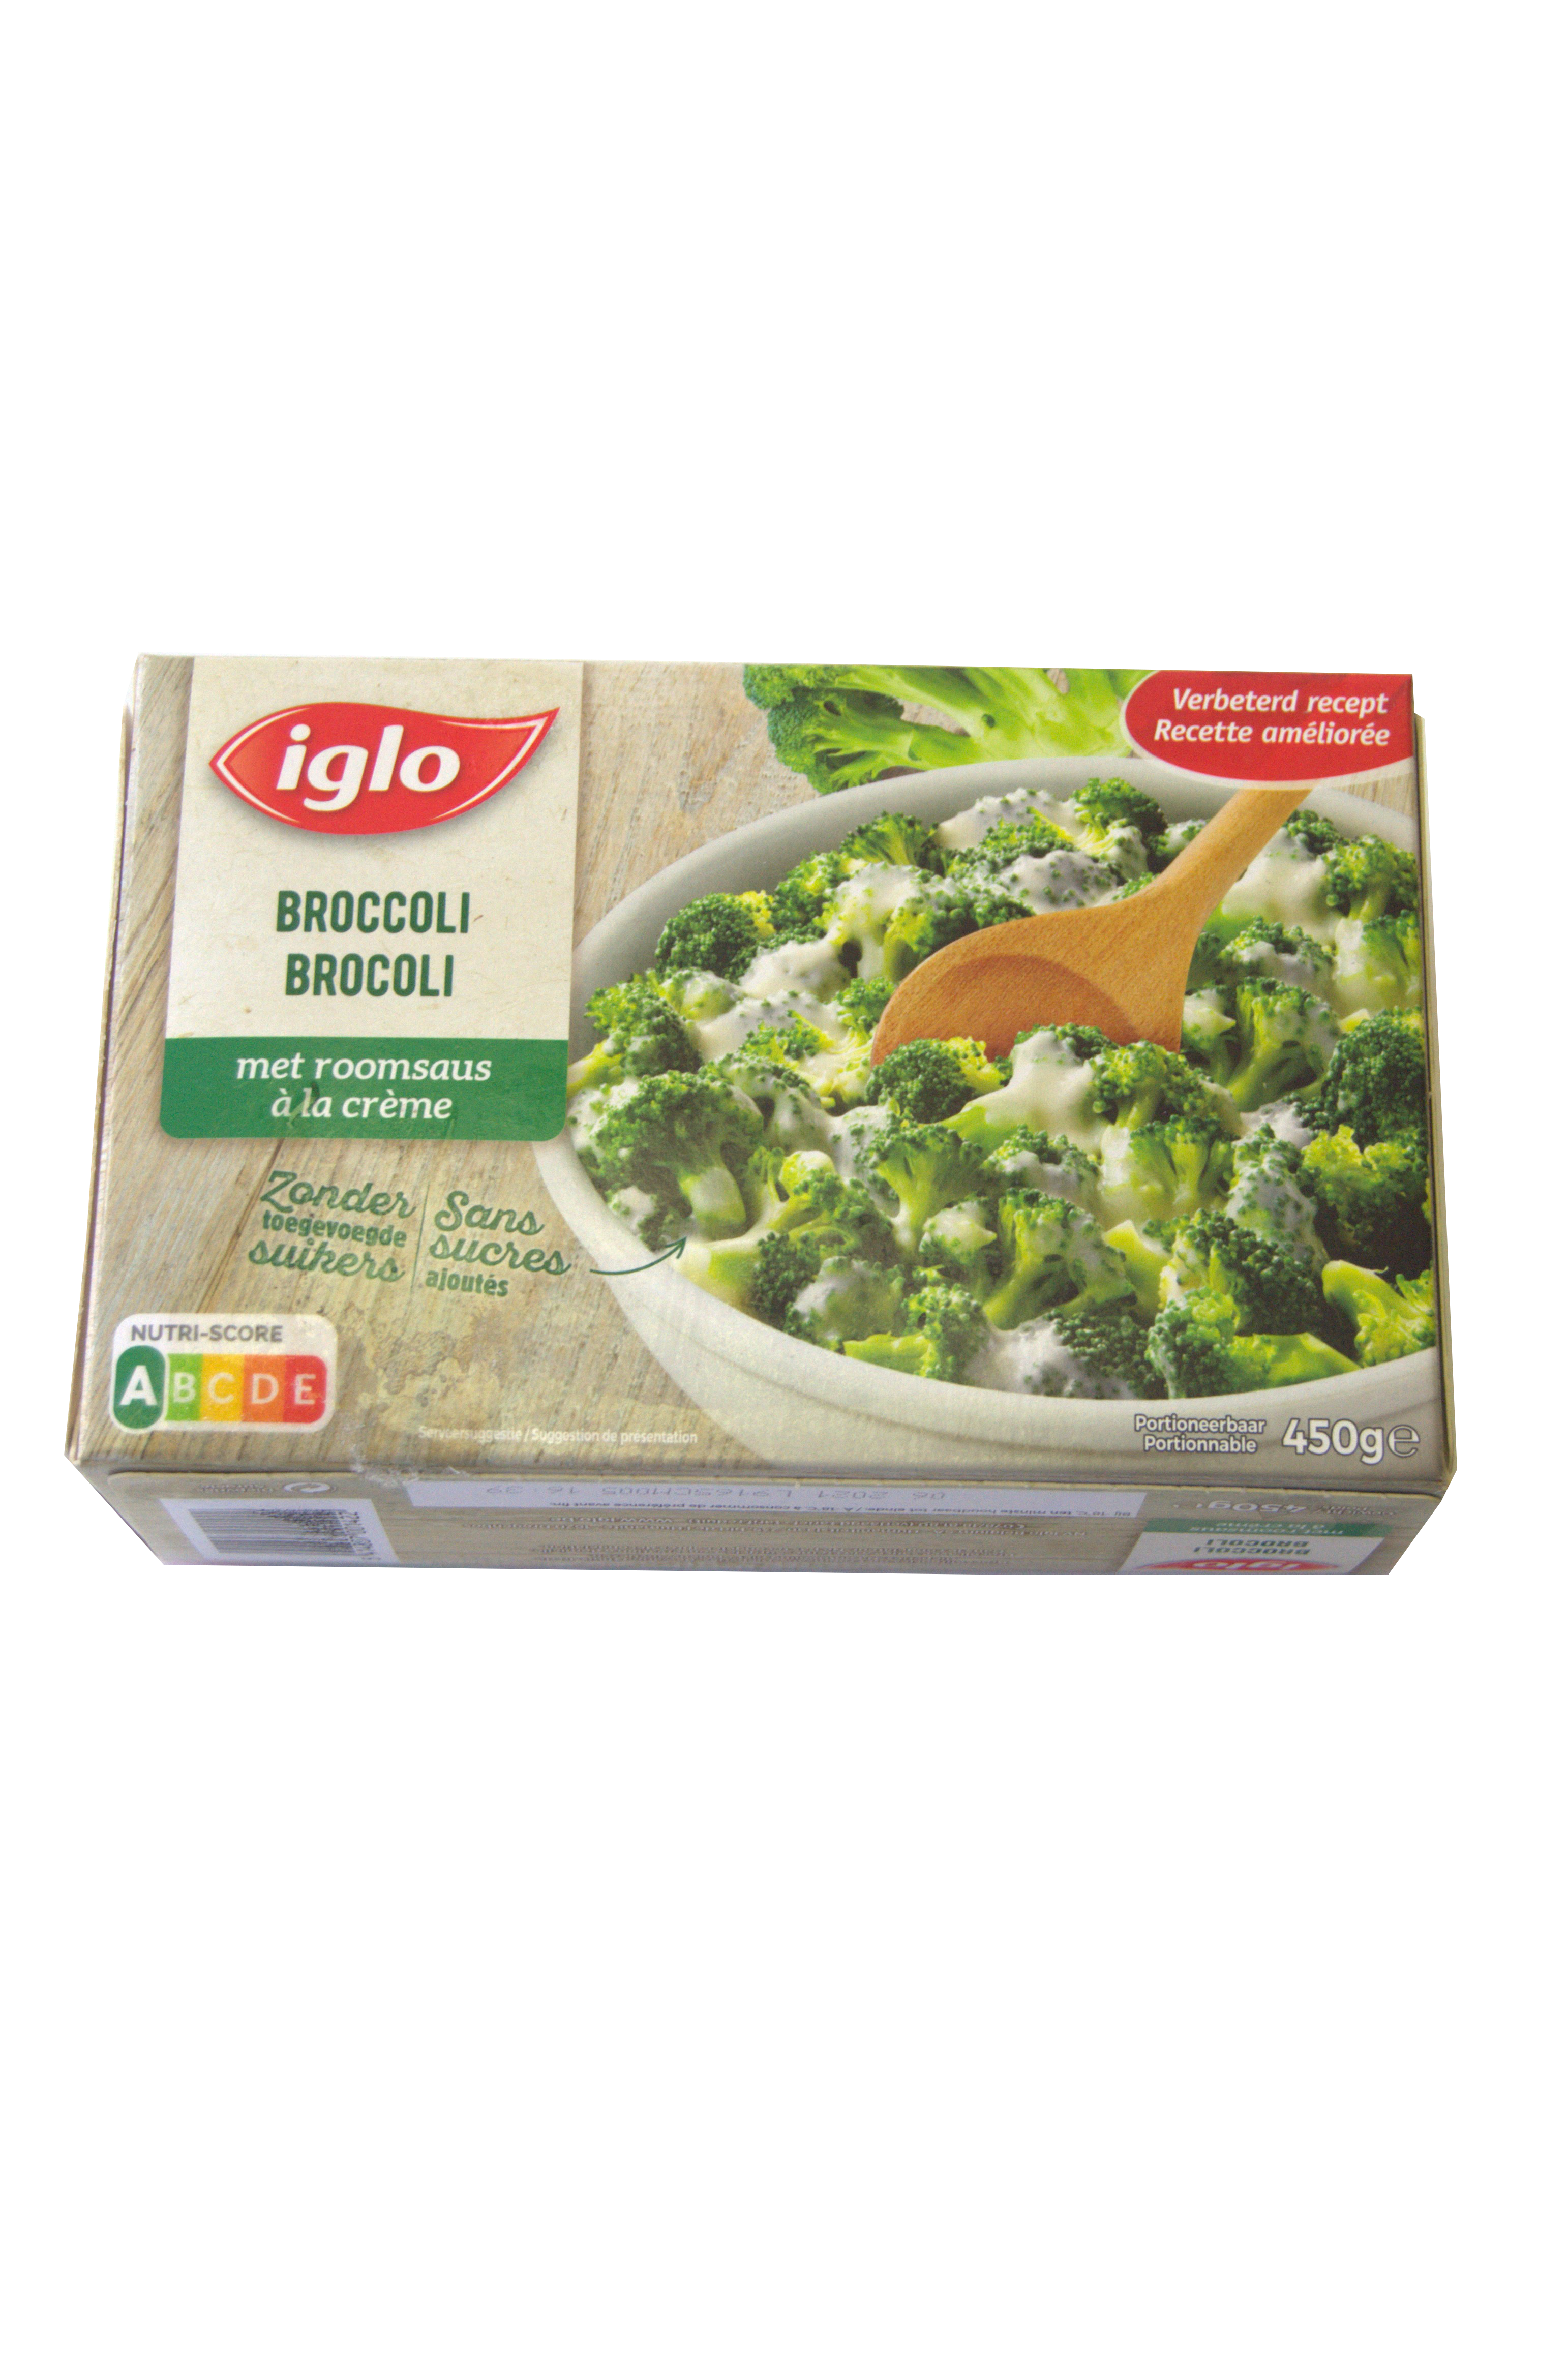 iglo broccoli met roomsaus 450